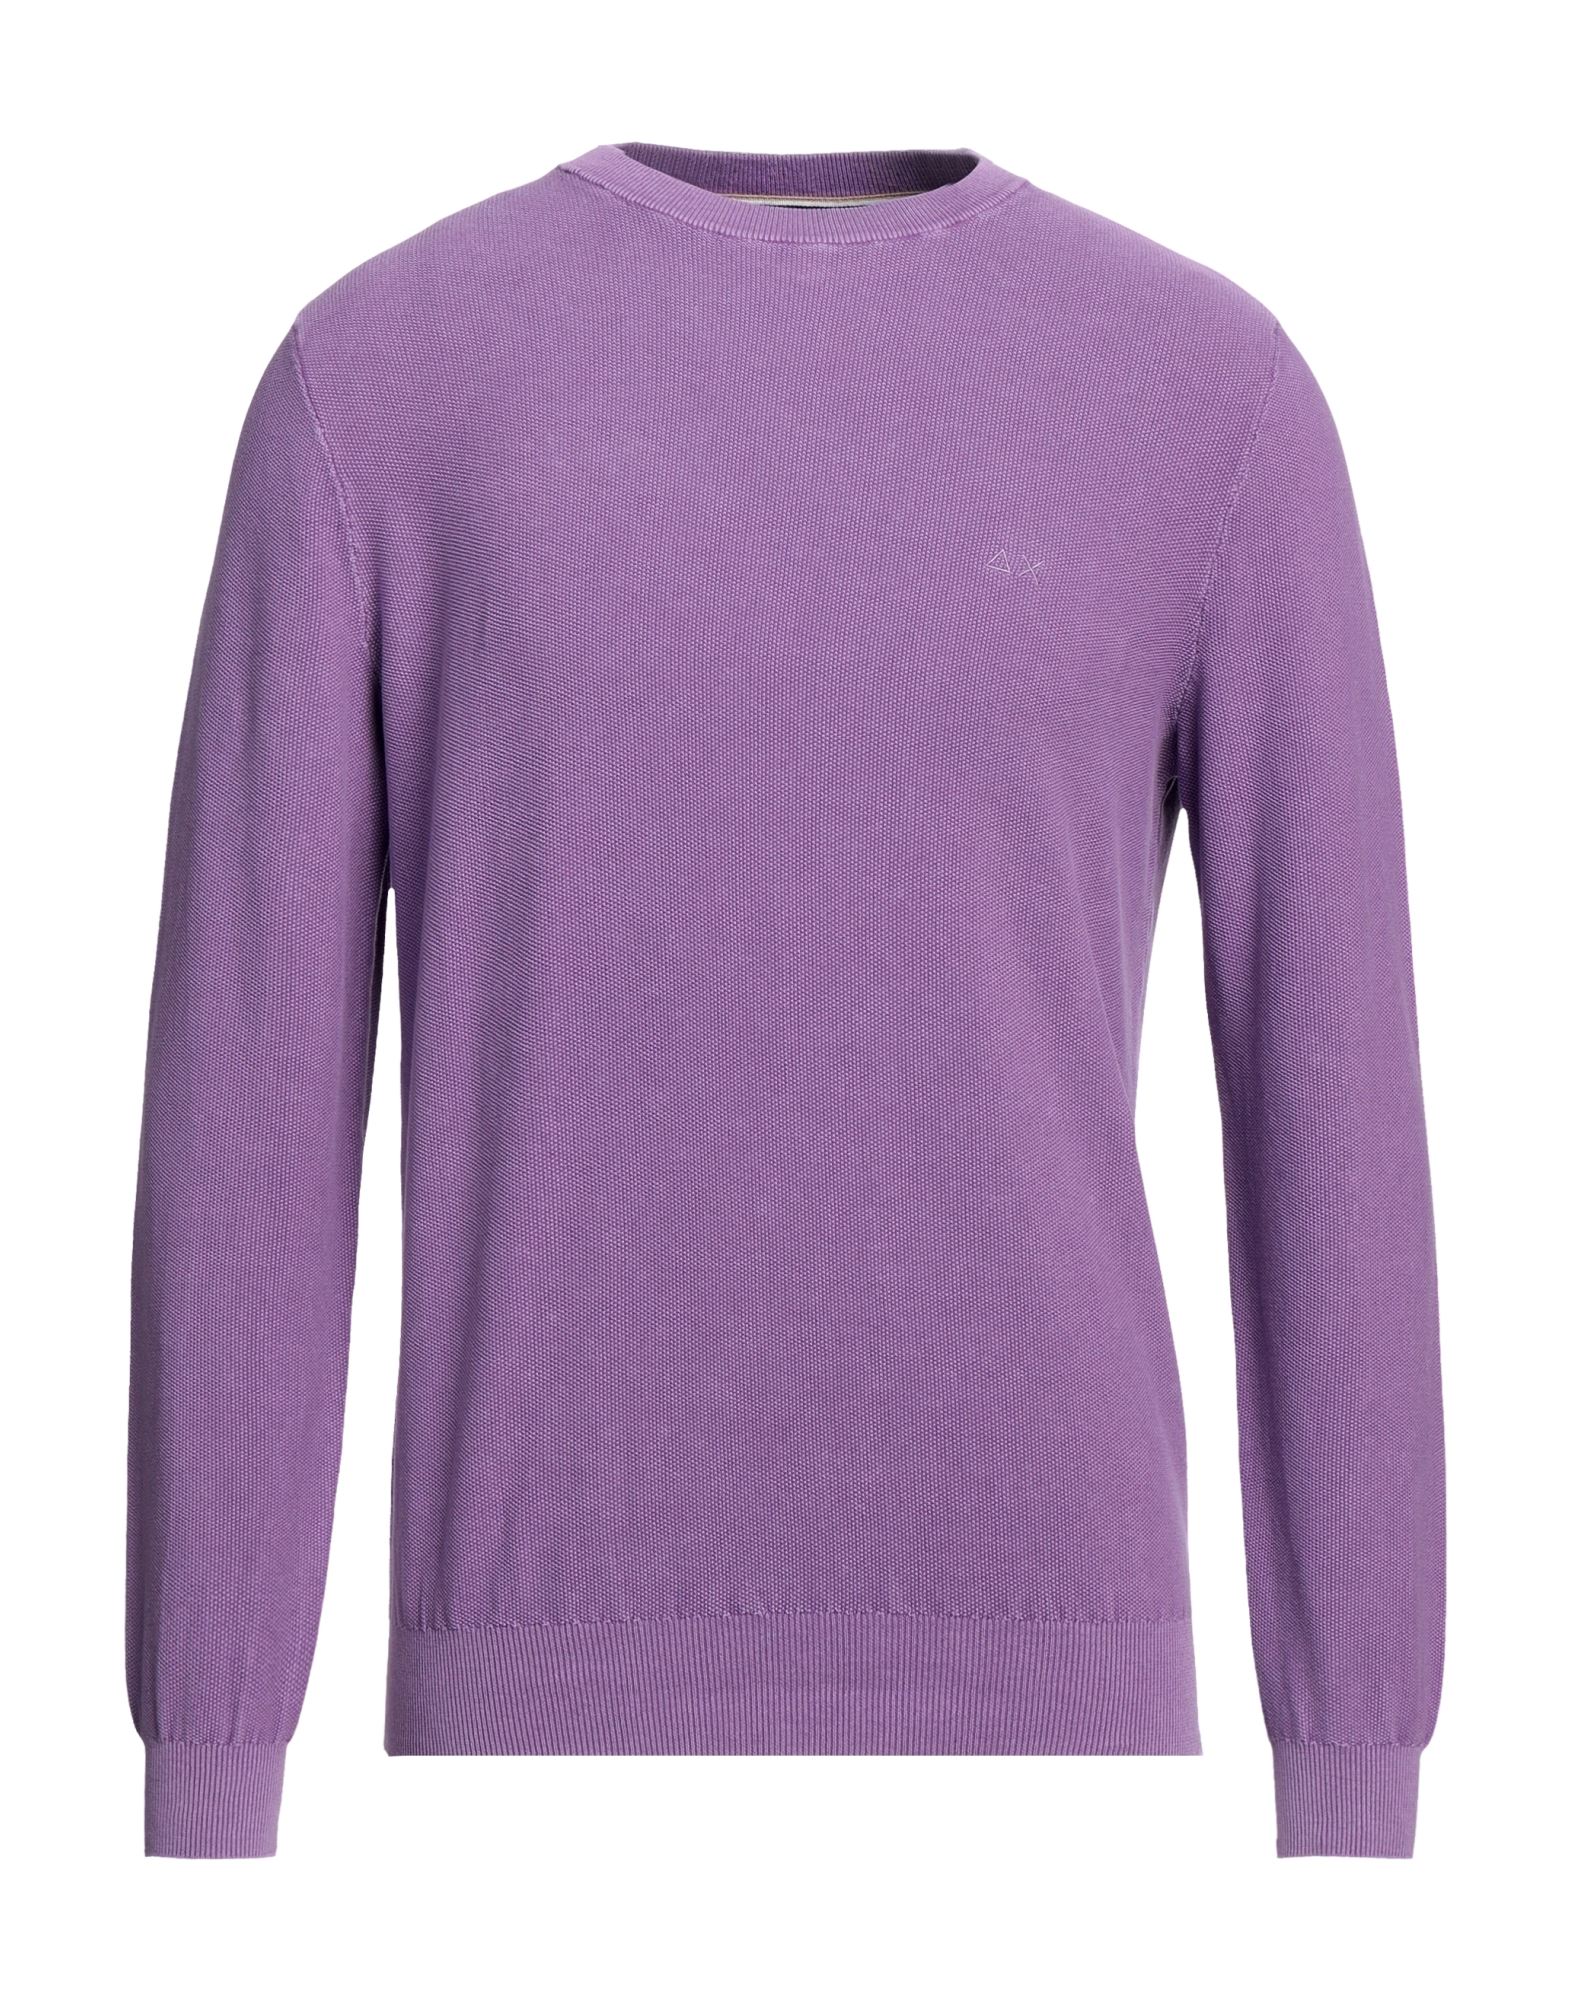 Sun 68 Sweaters In Light Purple